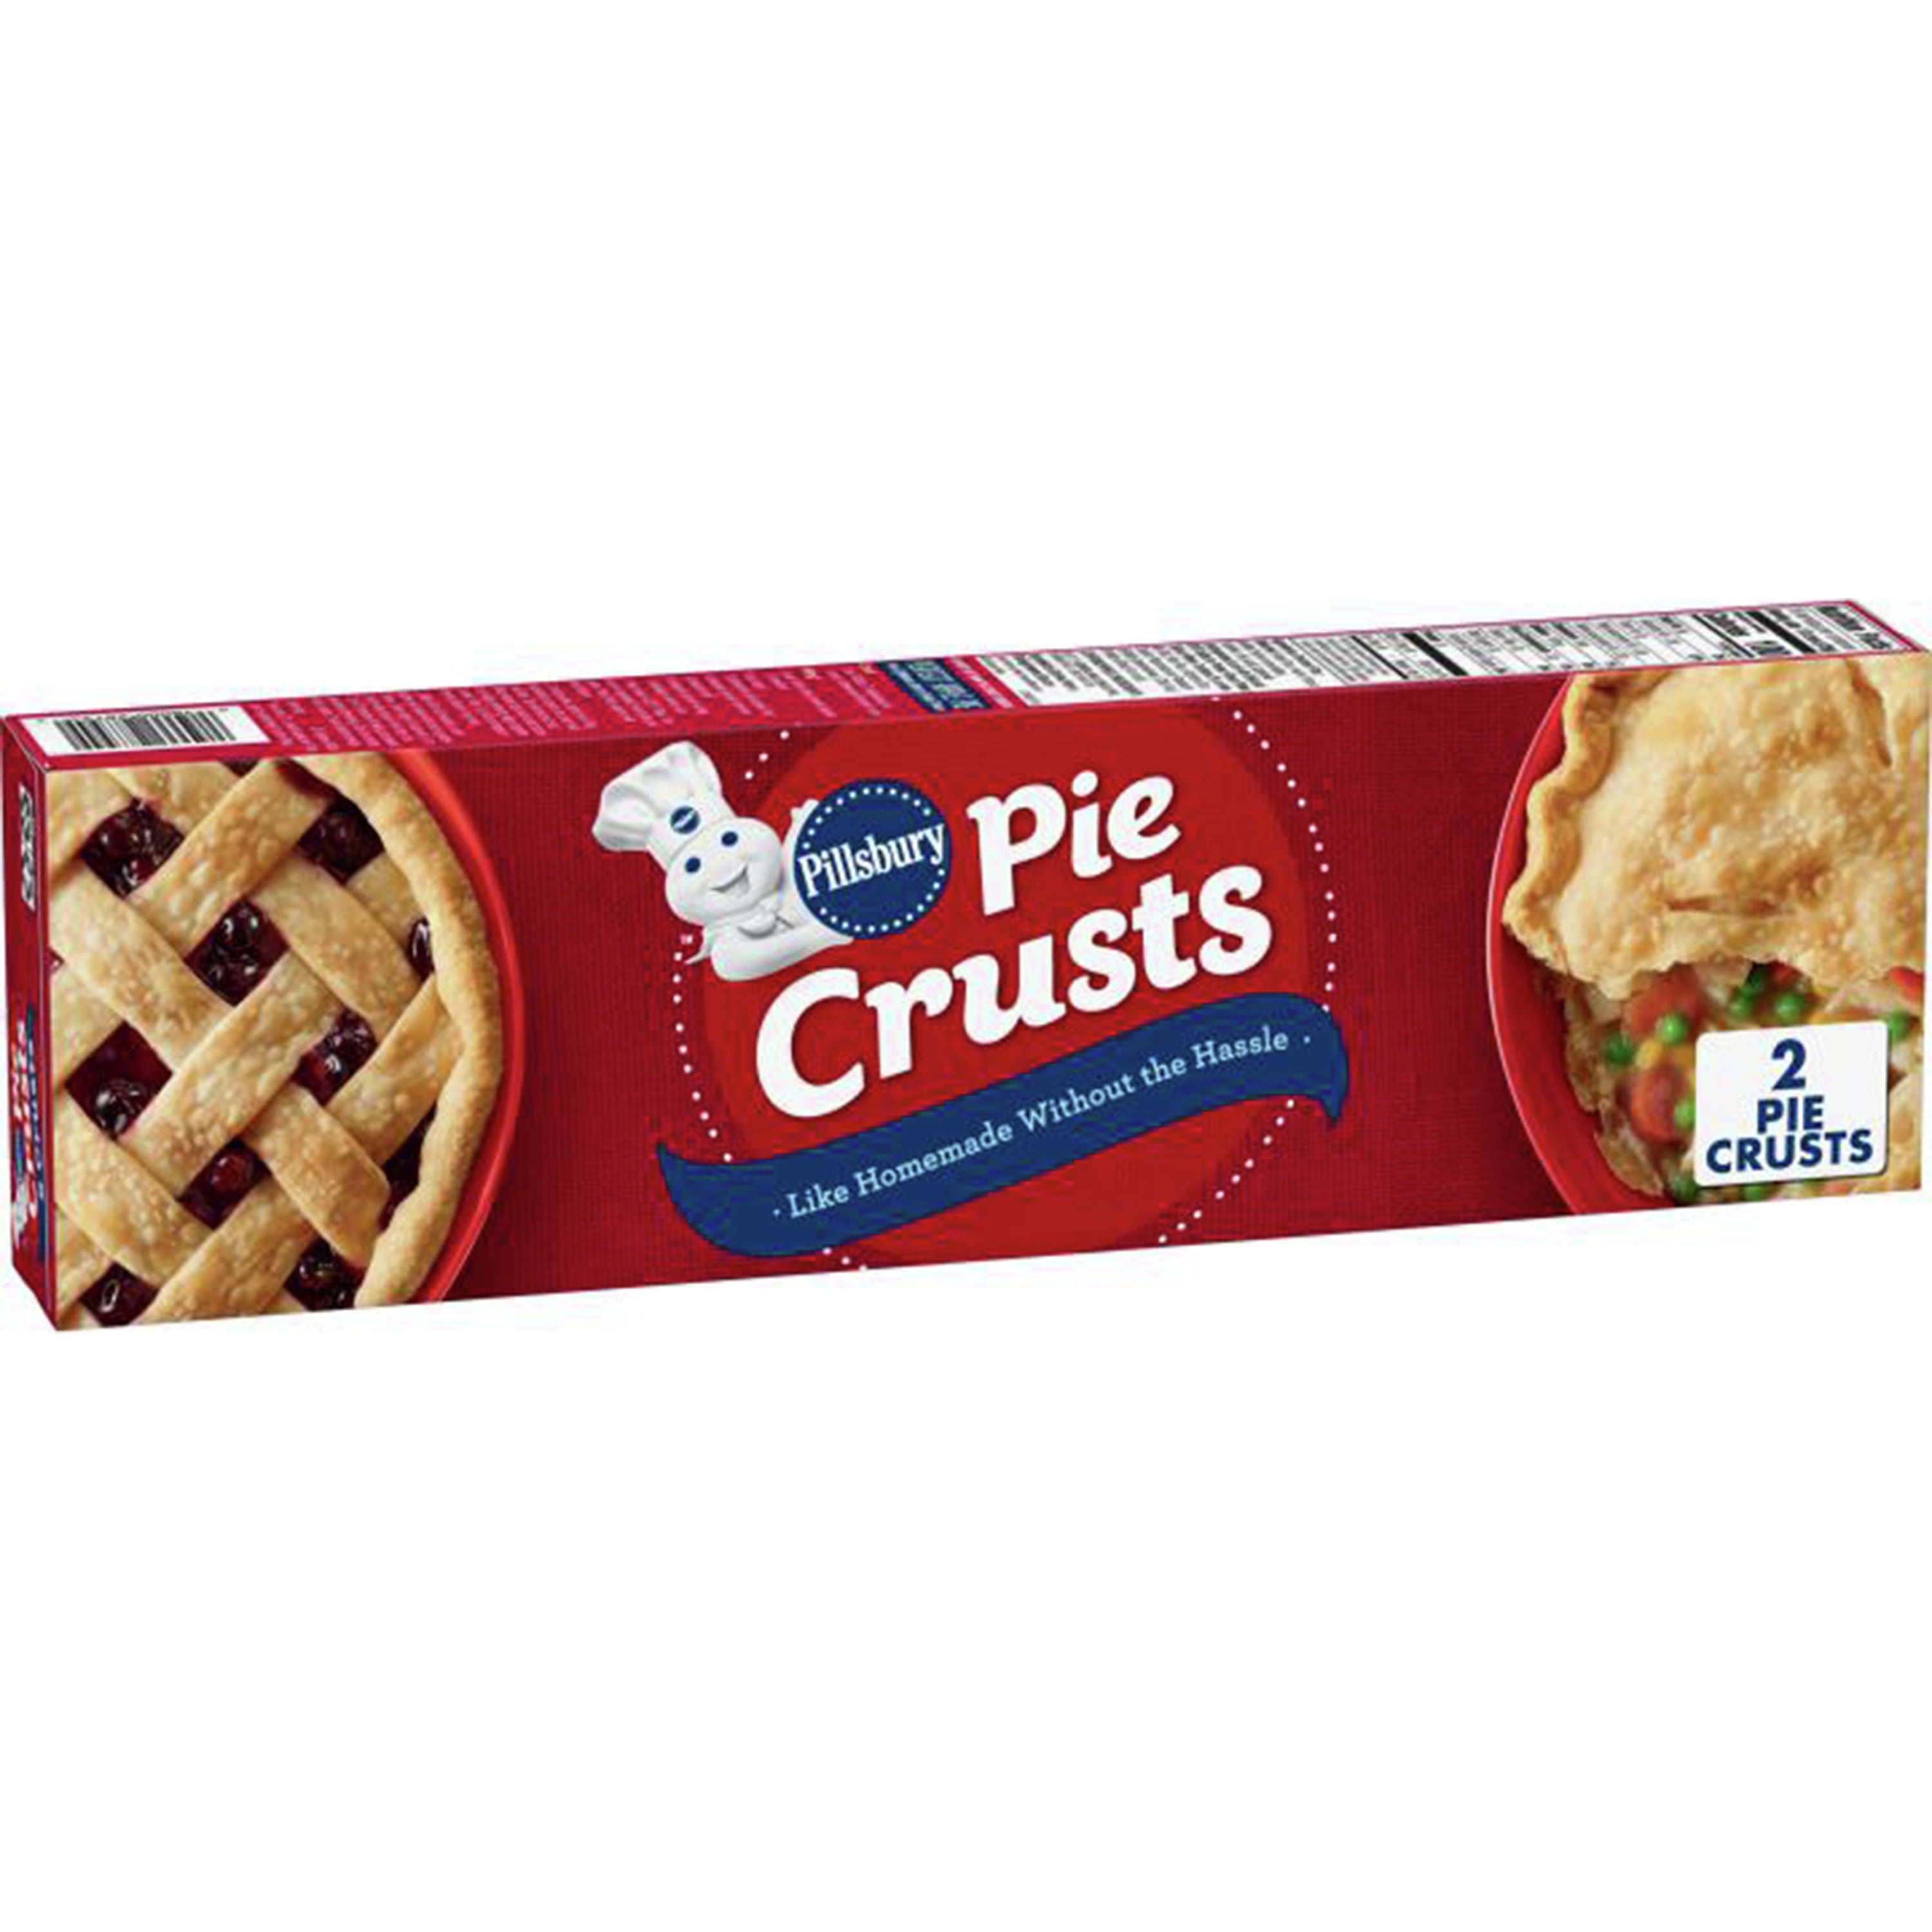 3" Wax Pie Crust Heart Crust w/tin Set of 3 crusts 